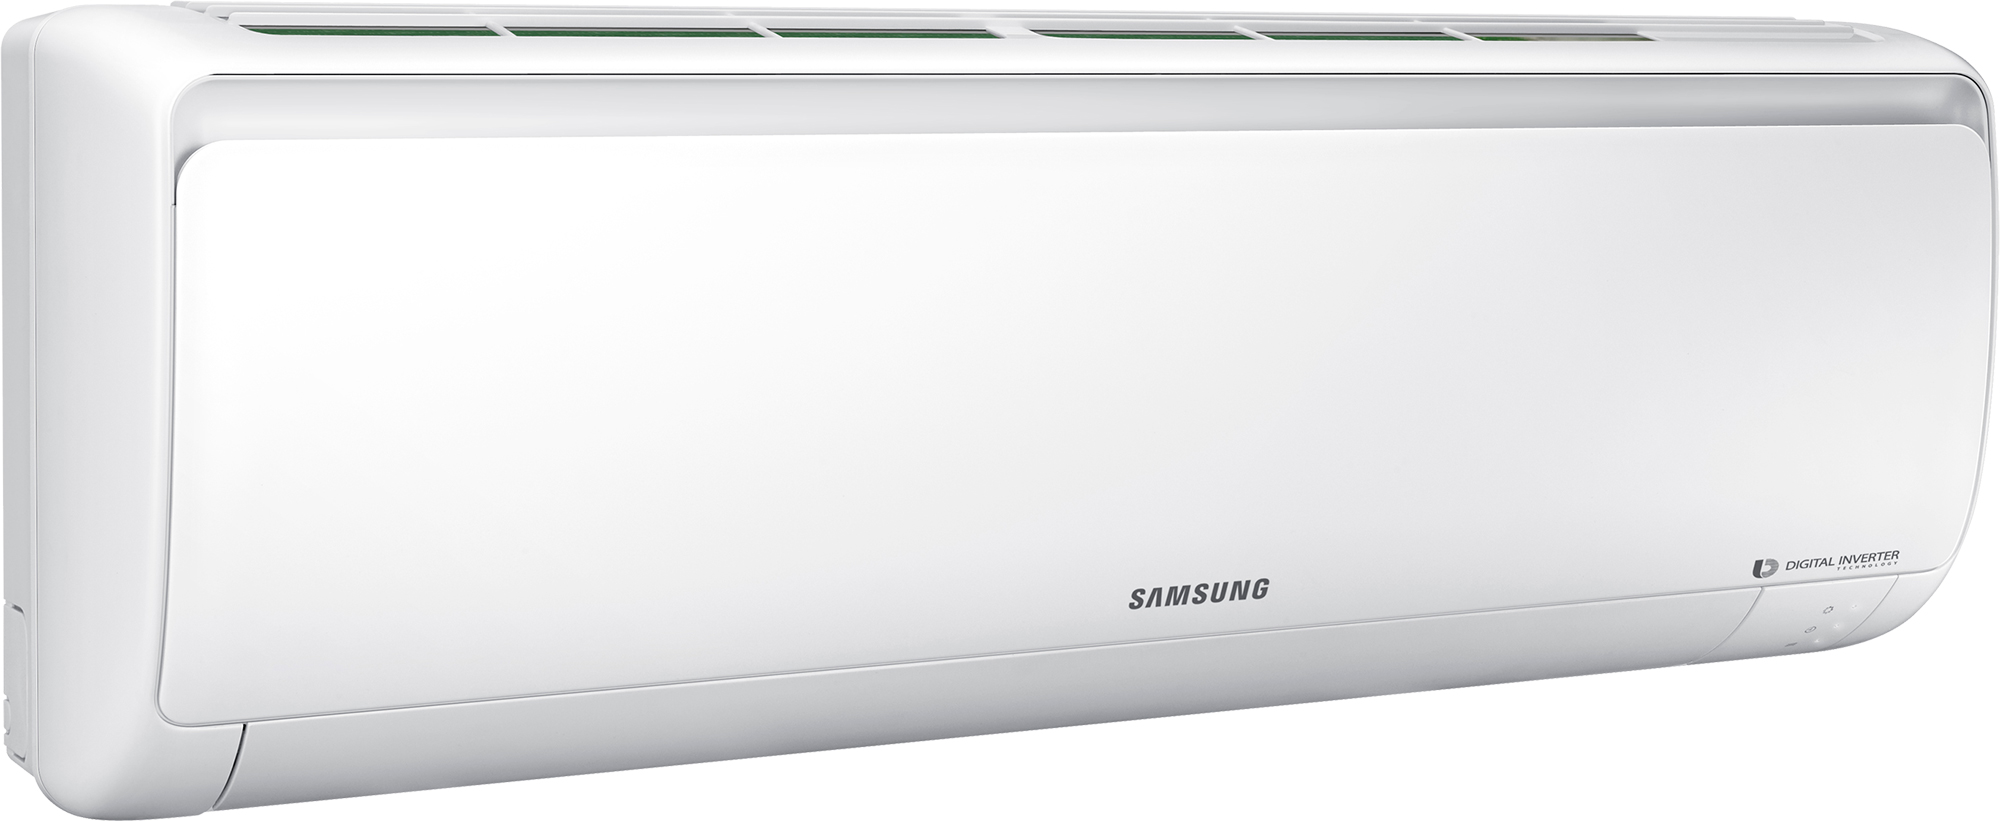 Кондиционер сплит-система Samsung AR12RSFPAWQNER / AR12RSFPAWQXER отзывы - изображения 5